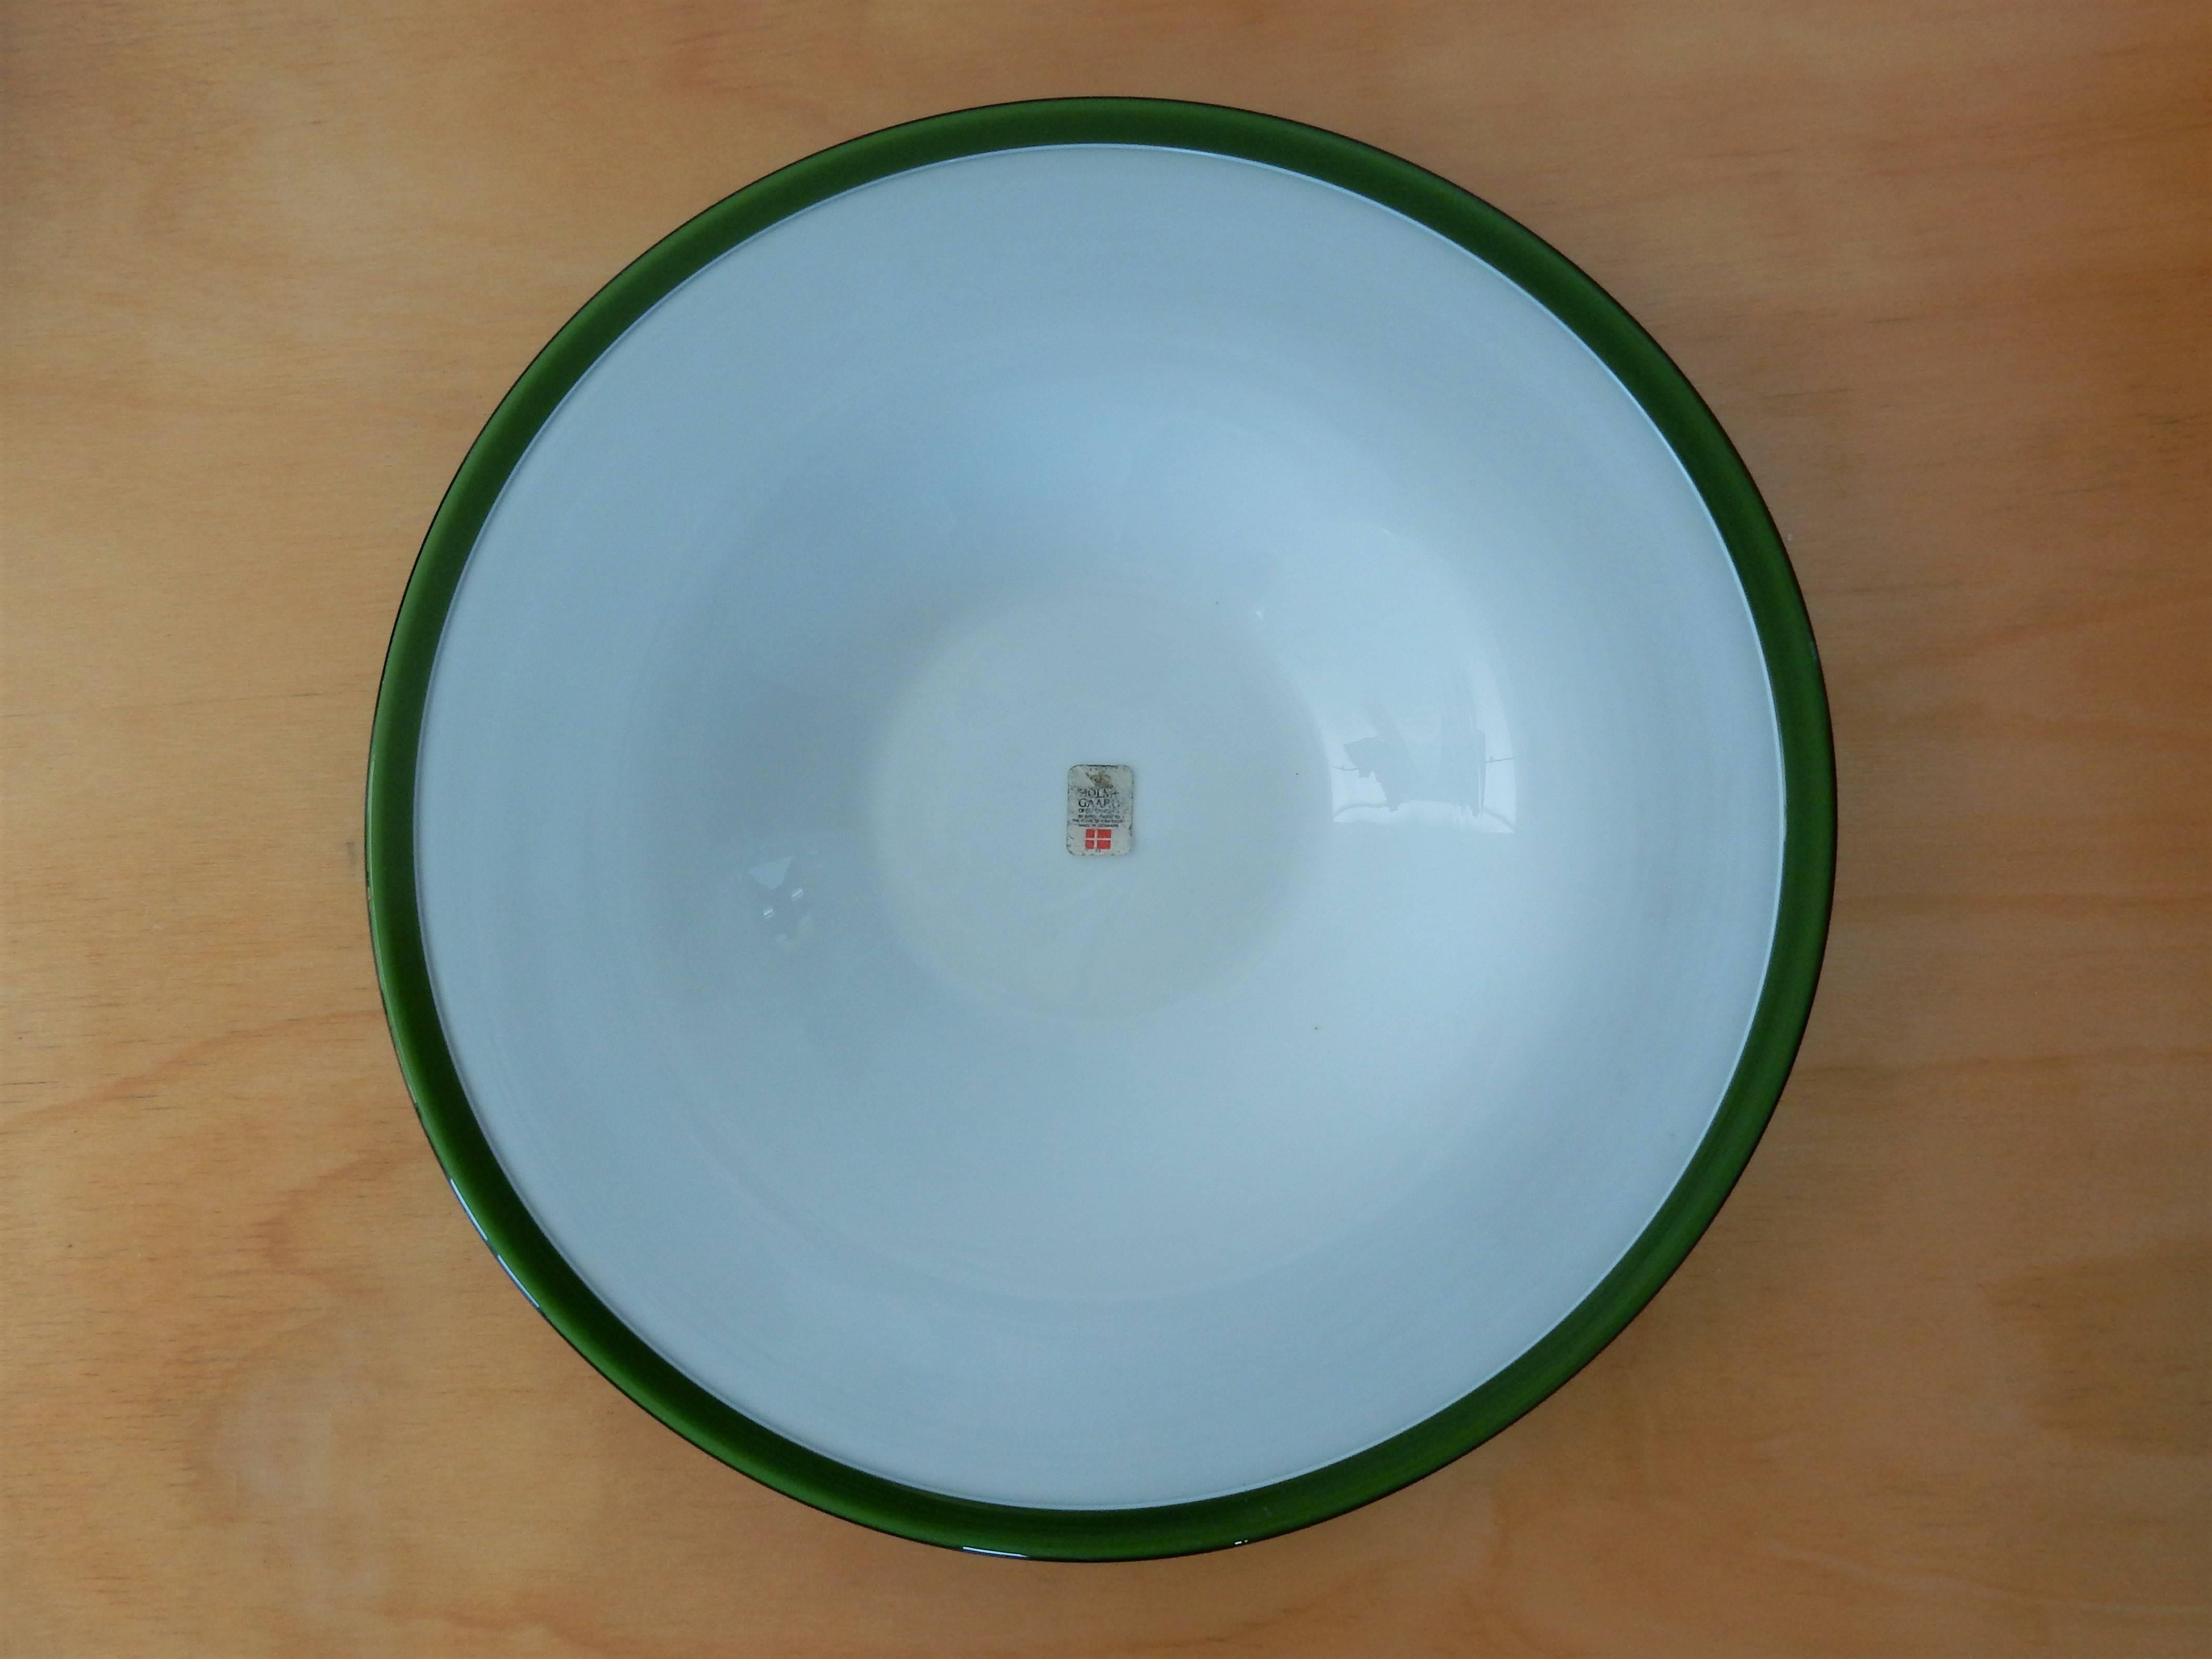 Très bel ensemble composé d'un petit et d'un grand bol en verre vert moyen et d'une assiette à bol de Kastrup-Holmegaard, conçu par Michael Bang. En excellent état, sans aucun défaut. Les bols ne sont pas marqués, mais nous avons un autocollant